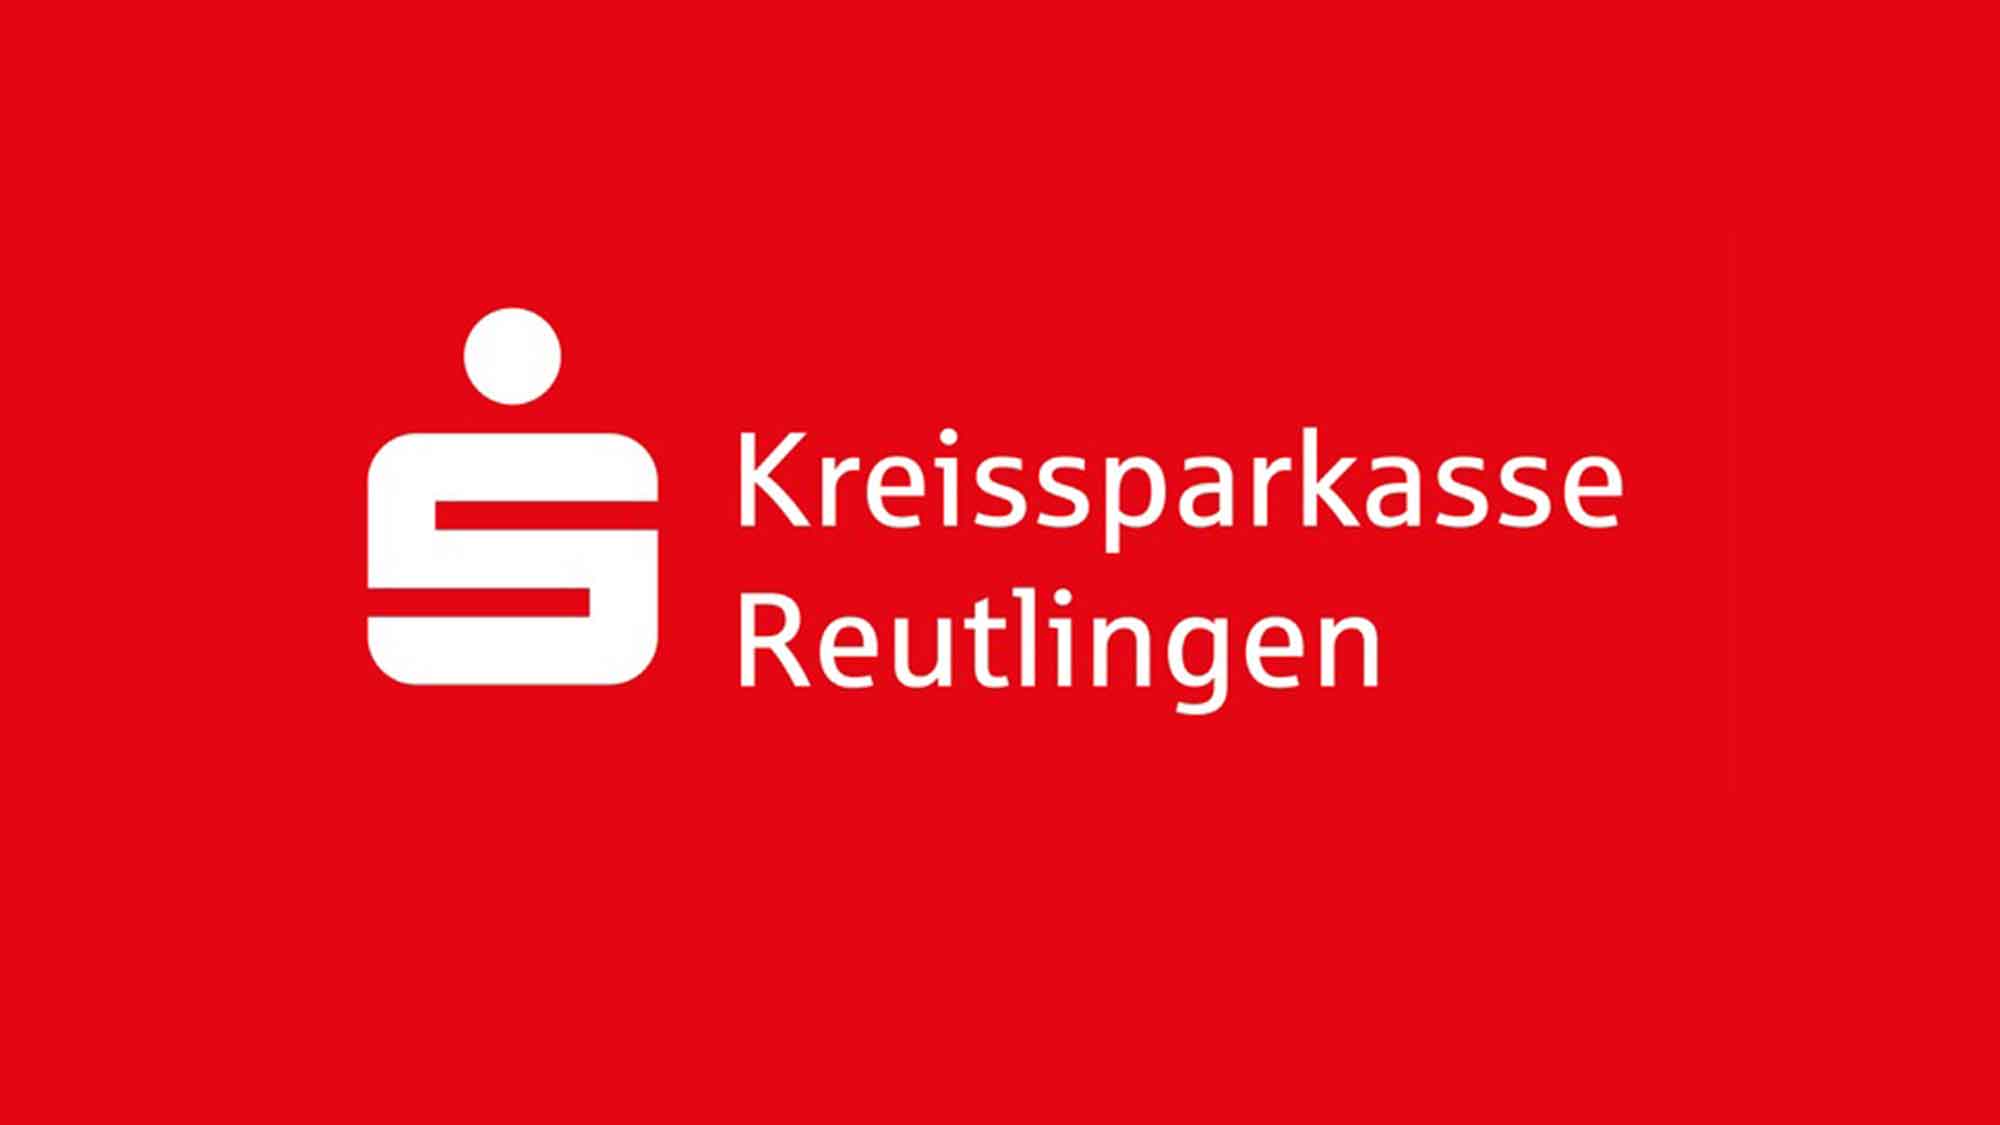 Neuer Catering Auftrag, Kreissparkasse Reutlingen beauftragt Klüh mit Mitarbeiterverpflegung